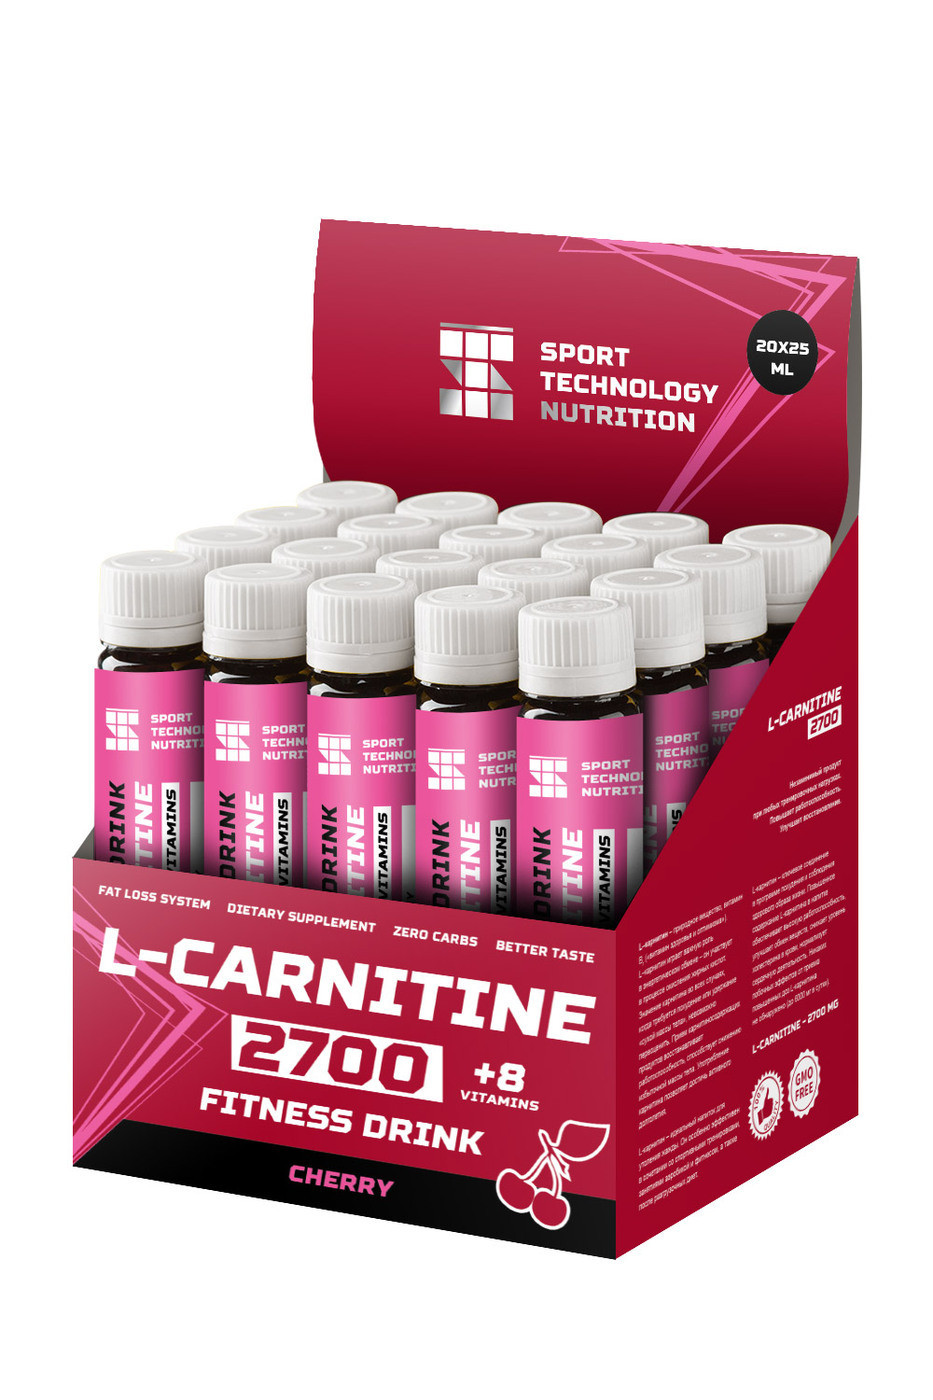 Sport Technology Nutrition 20 ампул L-карнитин 2700 плюс витамин С, вишня